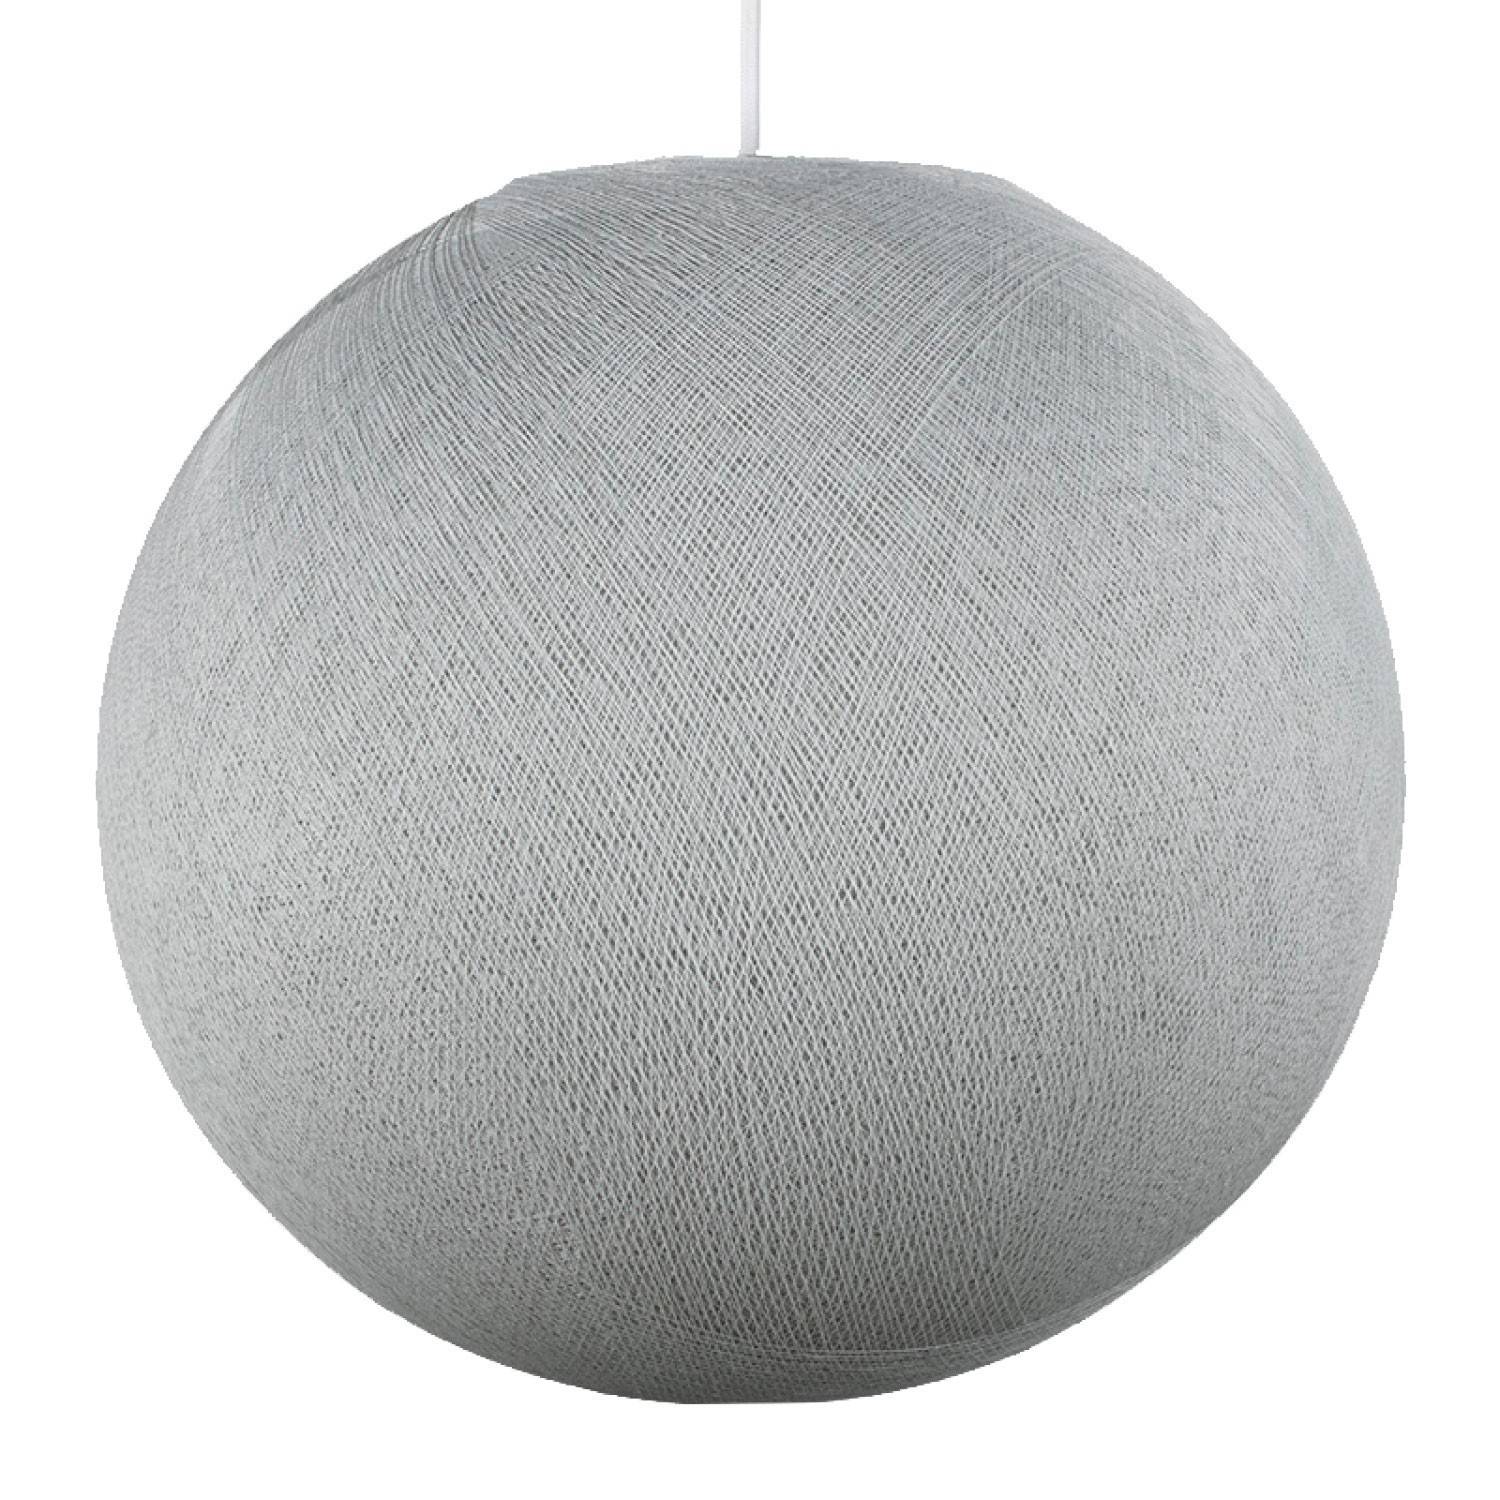 Stínidlo tvaru Koule z polyesterového vlákna - 100% vyrobené ručně